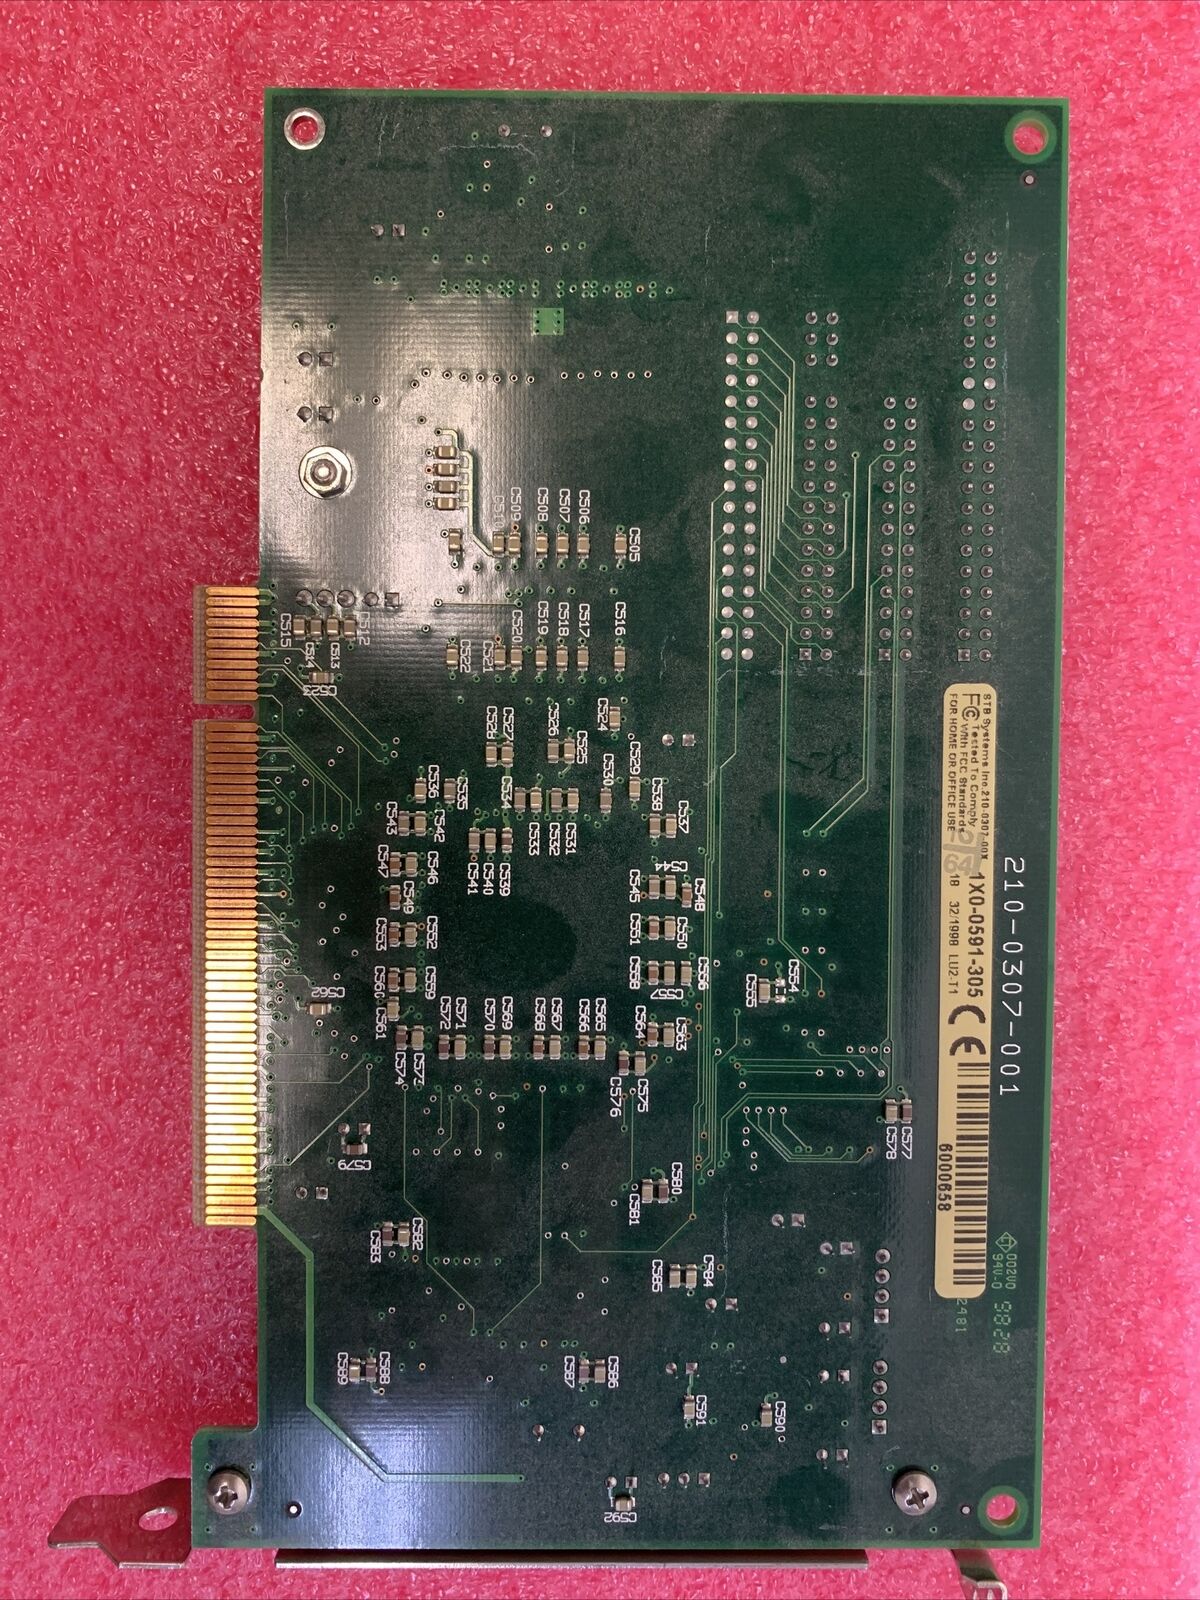 ATI 109-49800-11 Rage Pro Turbo AGP Graphics Card w/STB MPACT! 210-0307-001